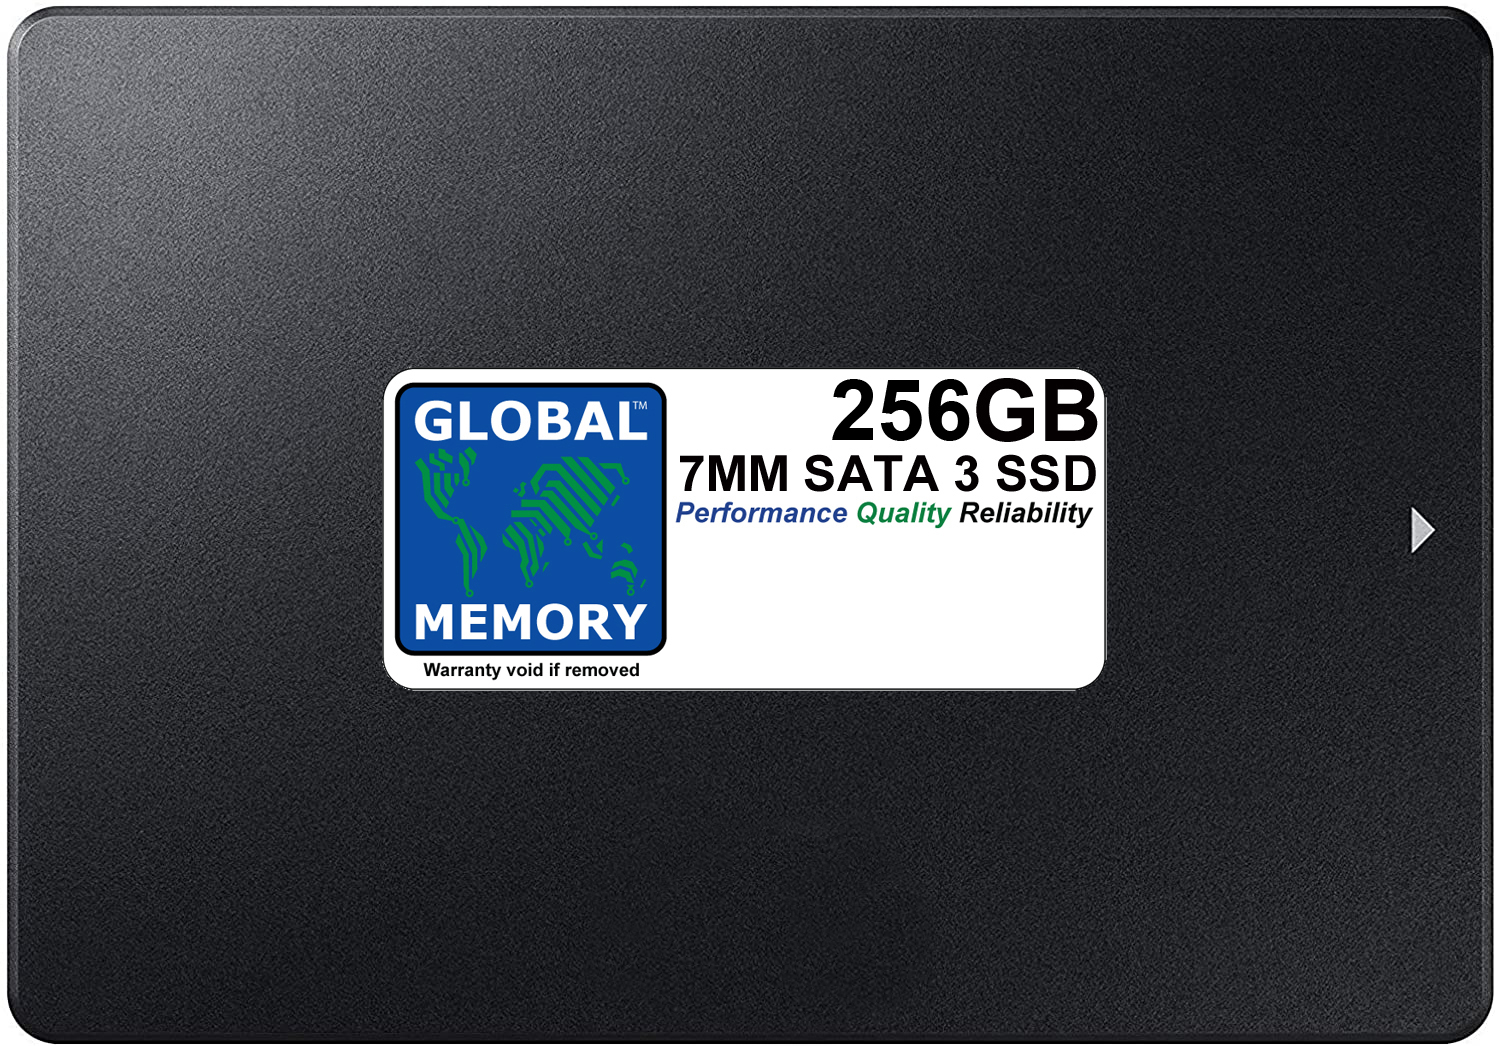 256GB 7mm 2.5" SATA 3 SSD FOR MACBOOK PRO NON RETINA (2011 - 2012)